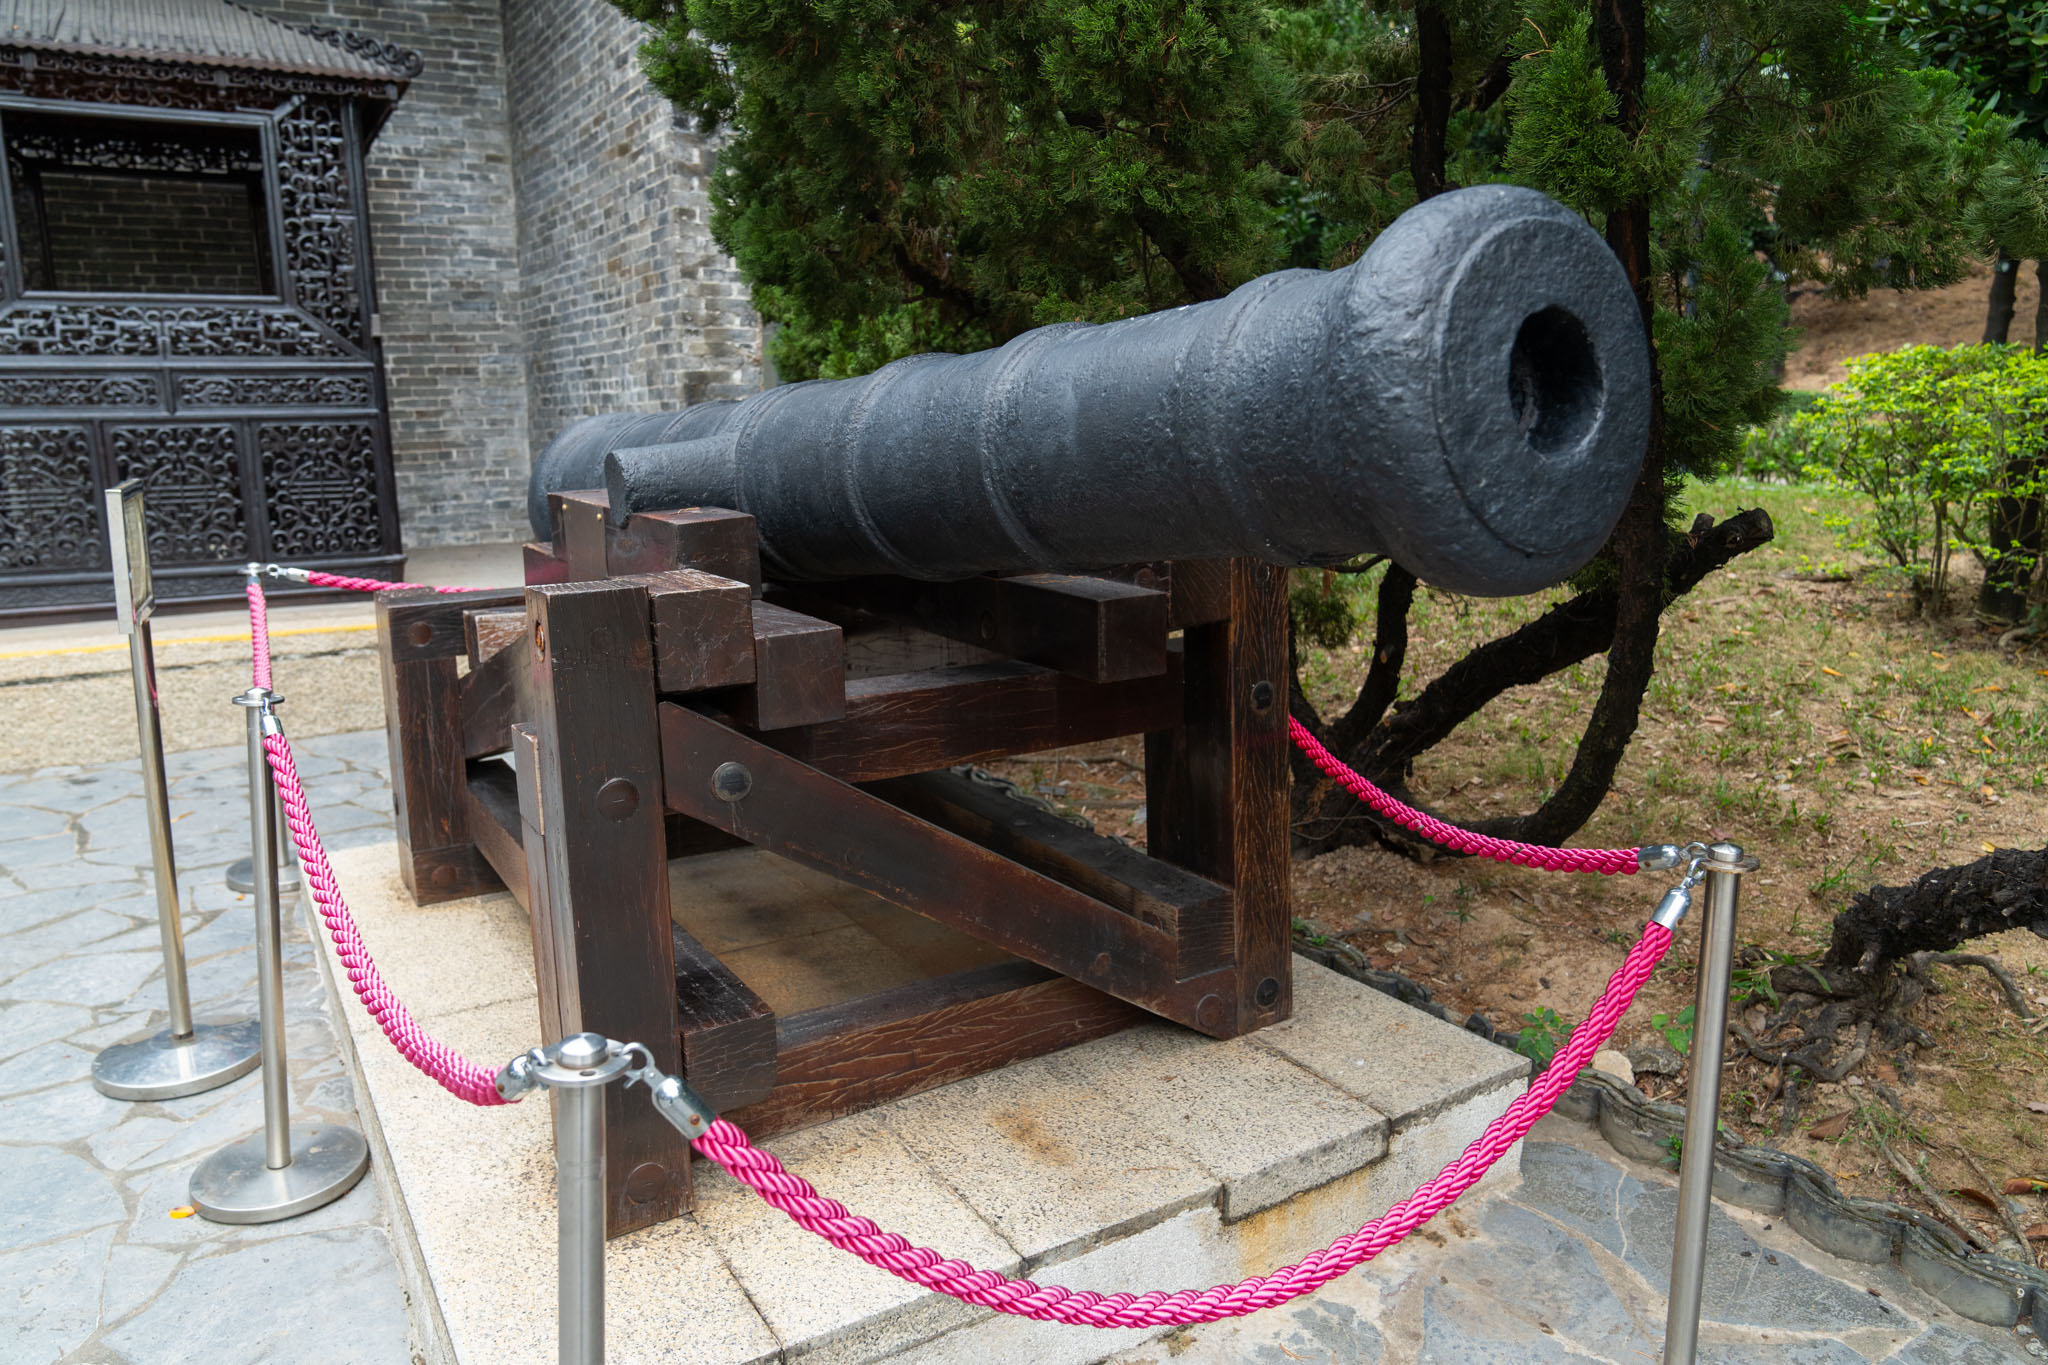 當年九龍寨城放有大炮，並於清拆時出土，現時放在公園內的展覽區展出。余兒透露，劇組曾製作了像真度極高的寨城大炮作道具，可惜最後未有出現在最終的剪接版本內。